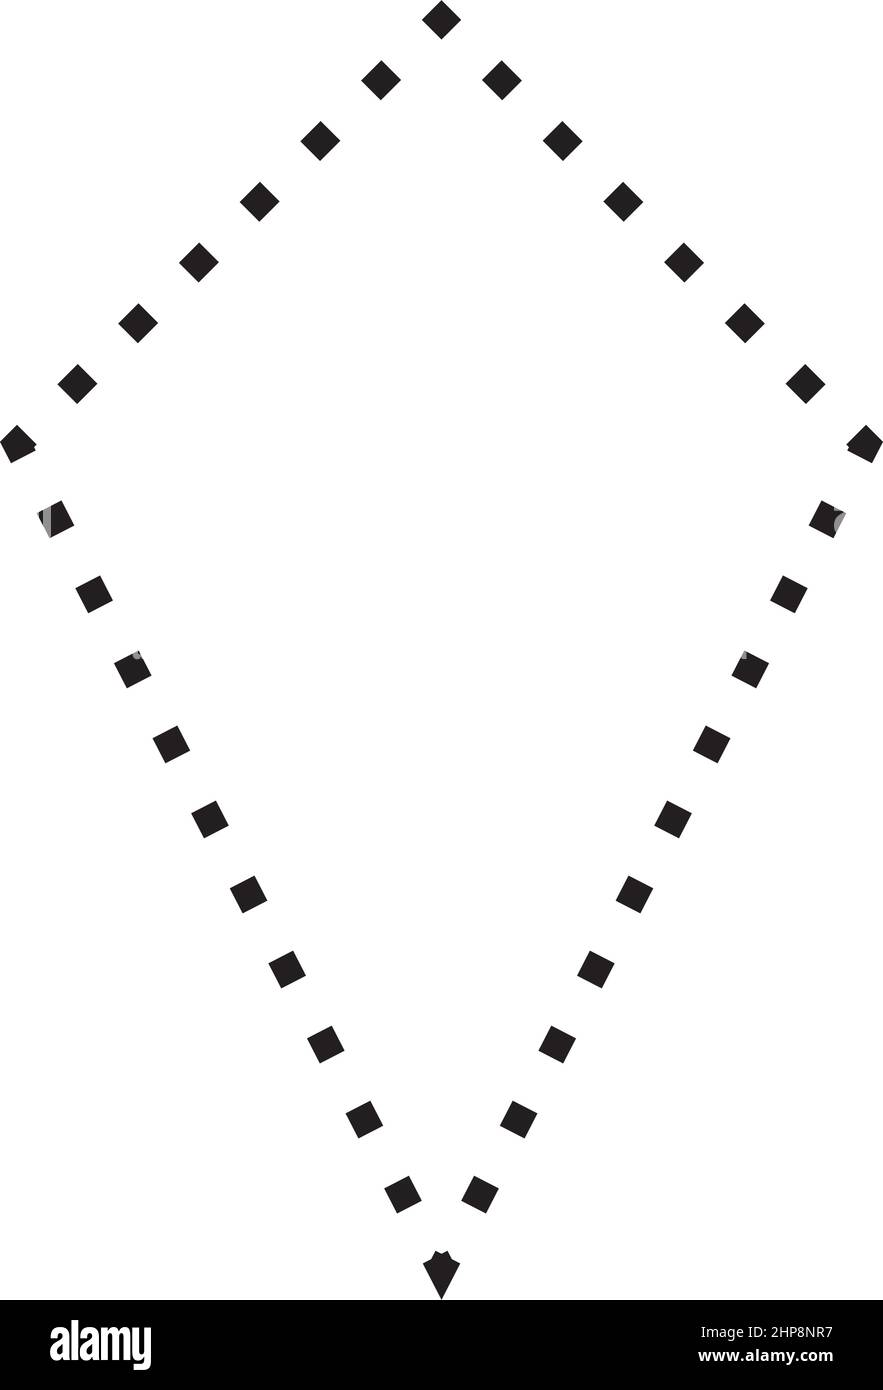 Kite Symbol gestrichelte Form Vektor-Symbol für kreative Grafik-Design ui-Element in einem Piktogramm Illustration Stock Vektor